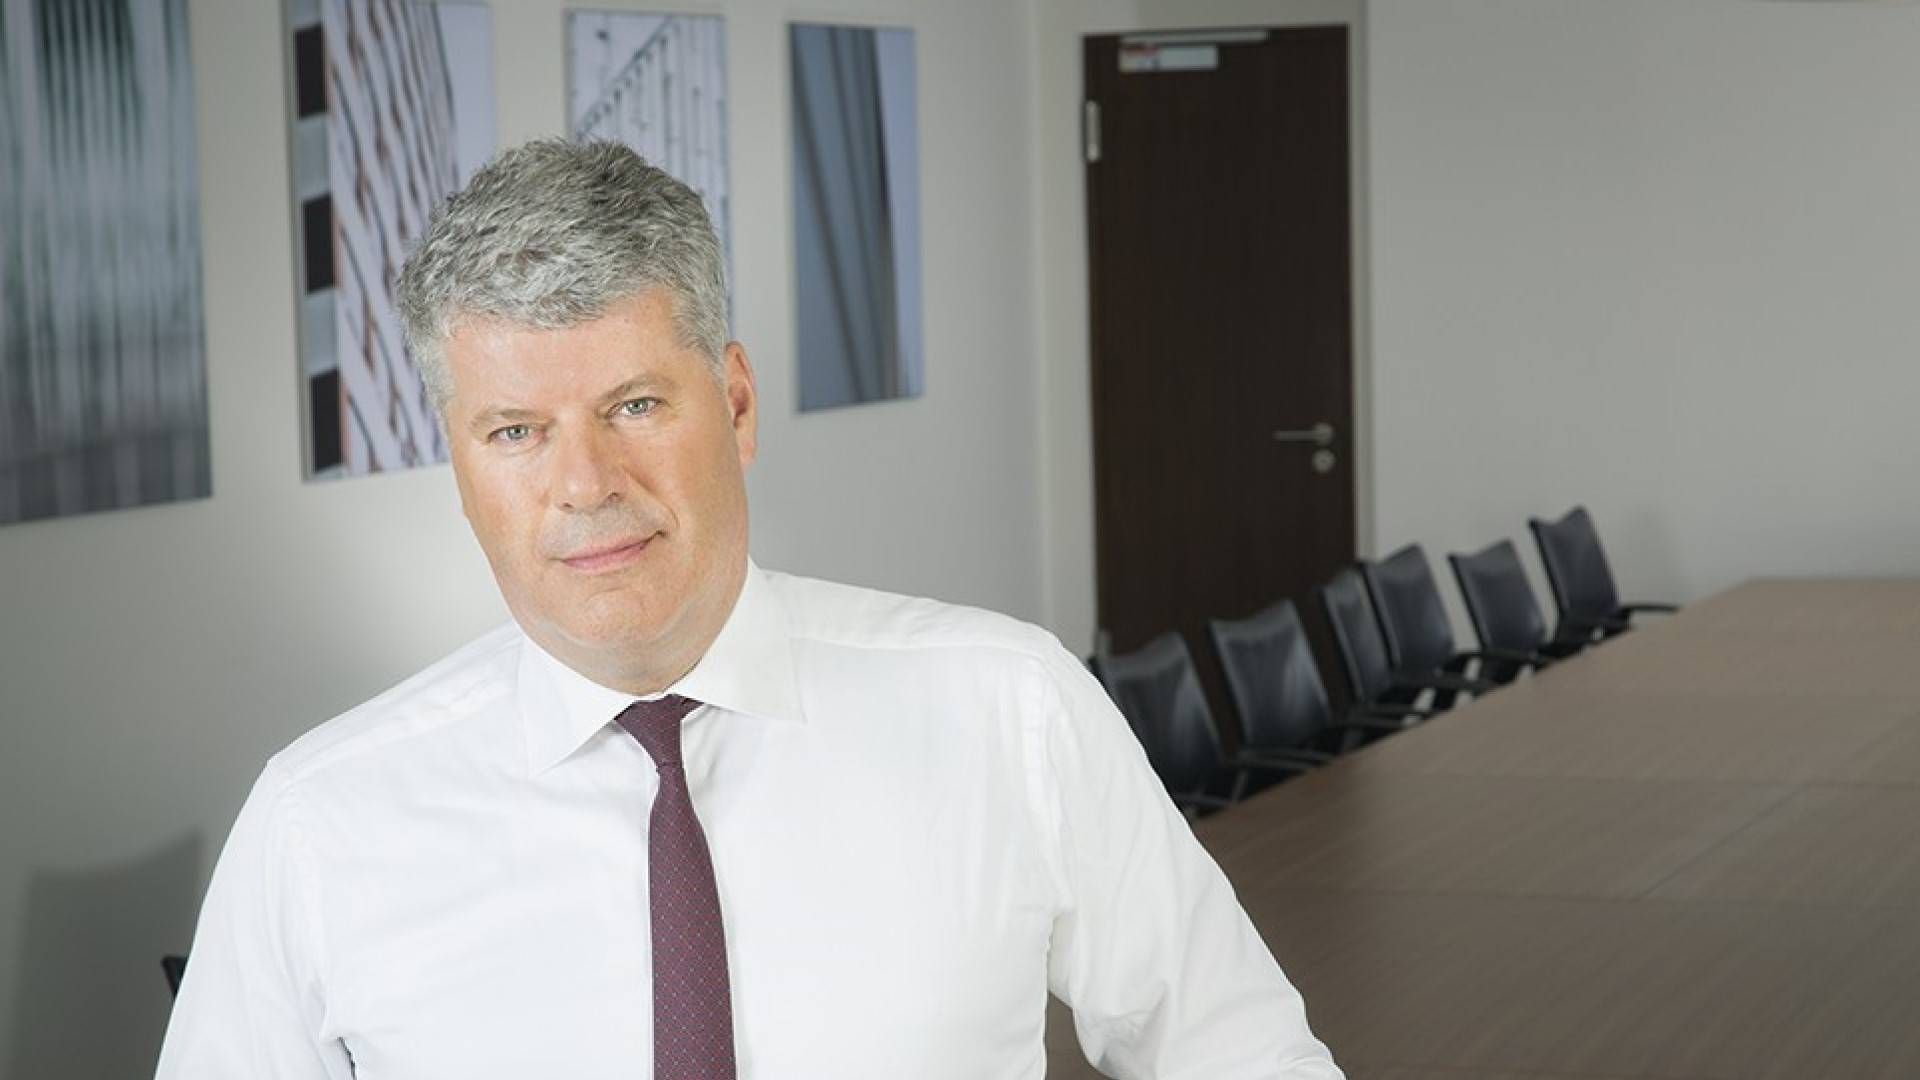 Ron van het Hof, CEO von Euler Hermes in Deutschland, Österreich und der Schweiz | Foto: Euler Hermes